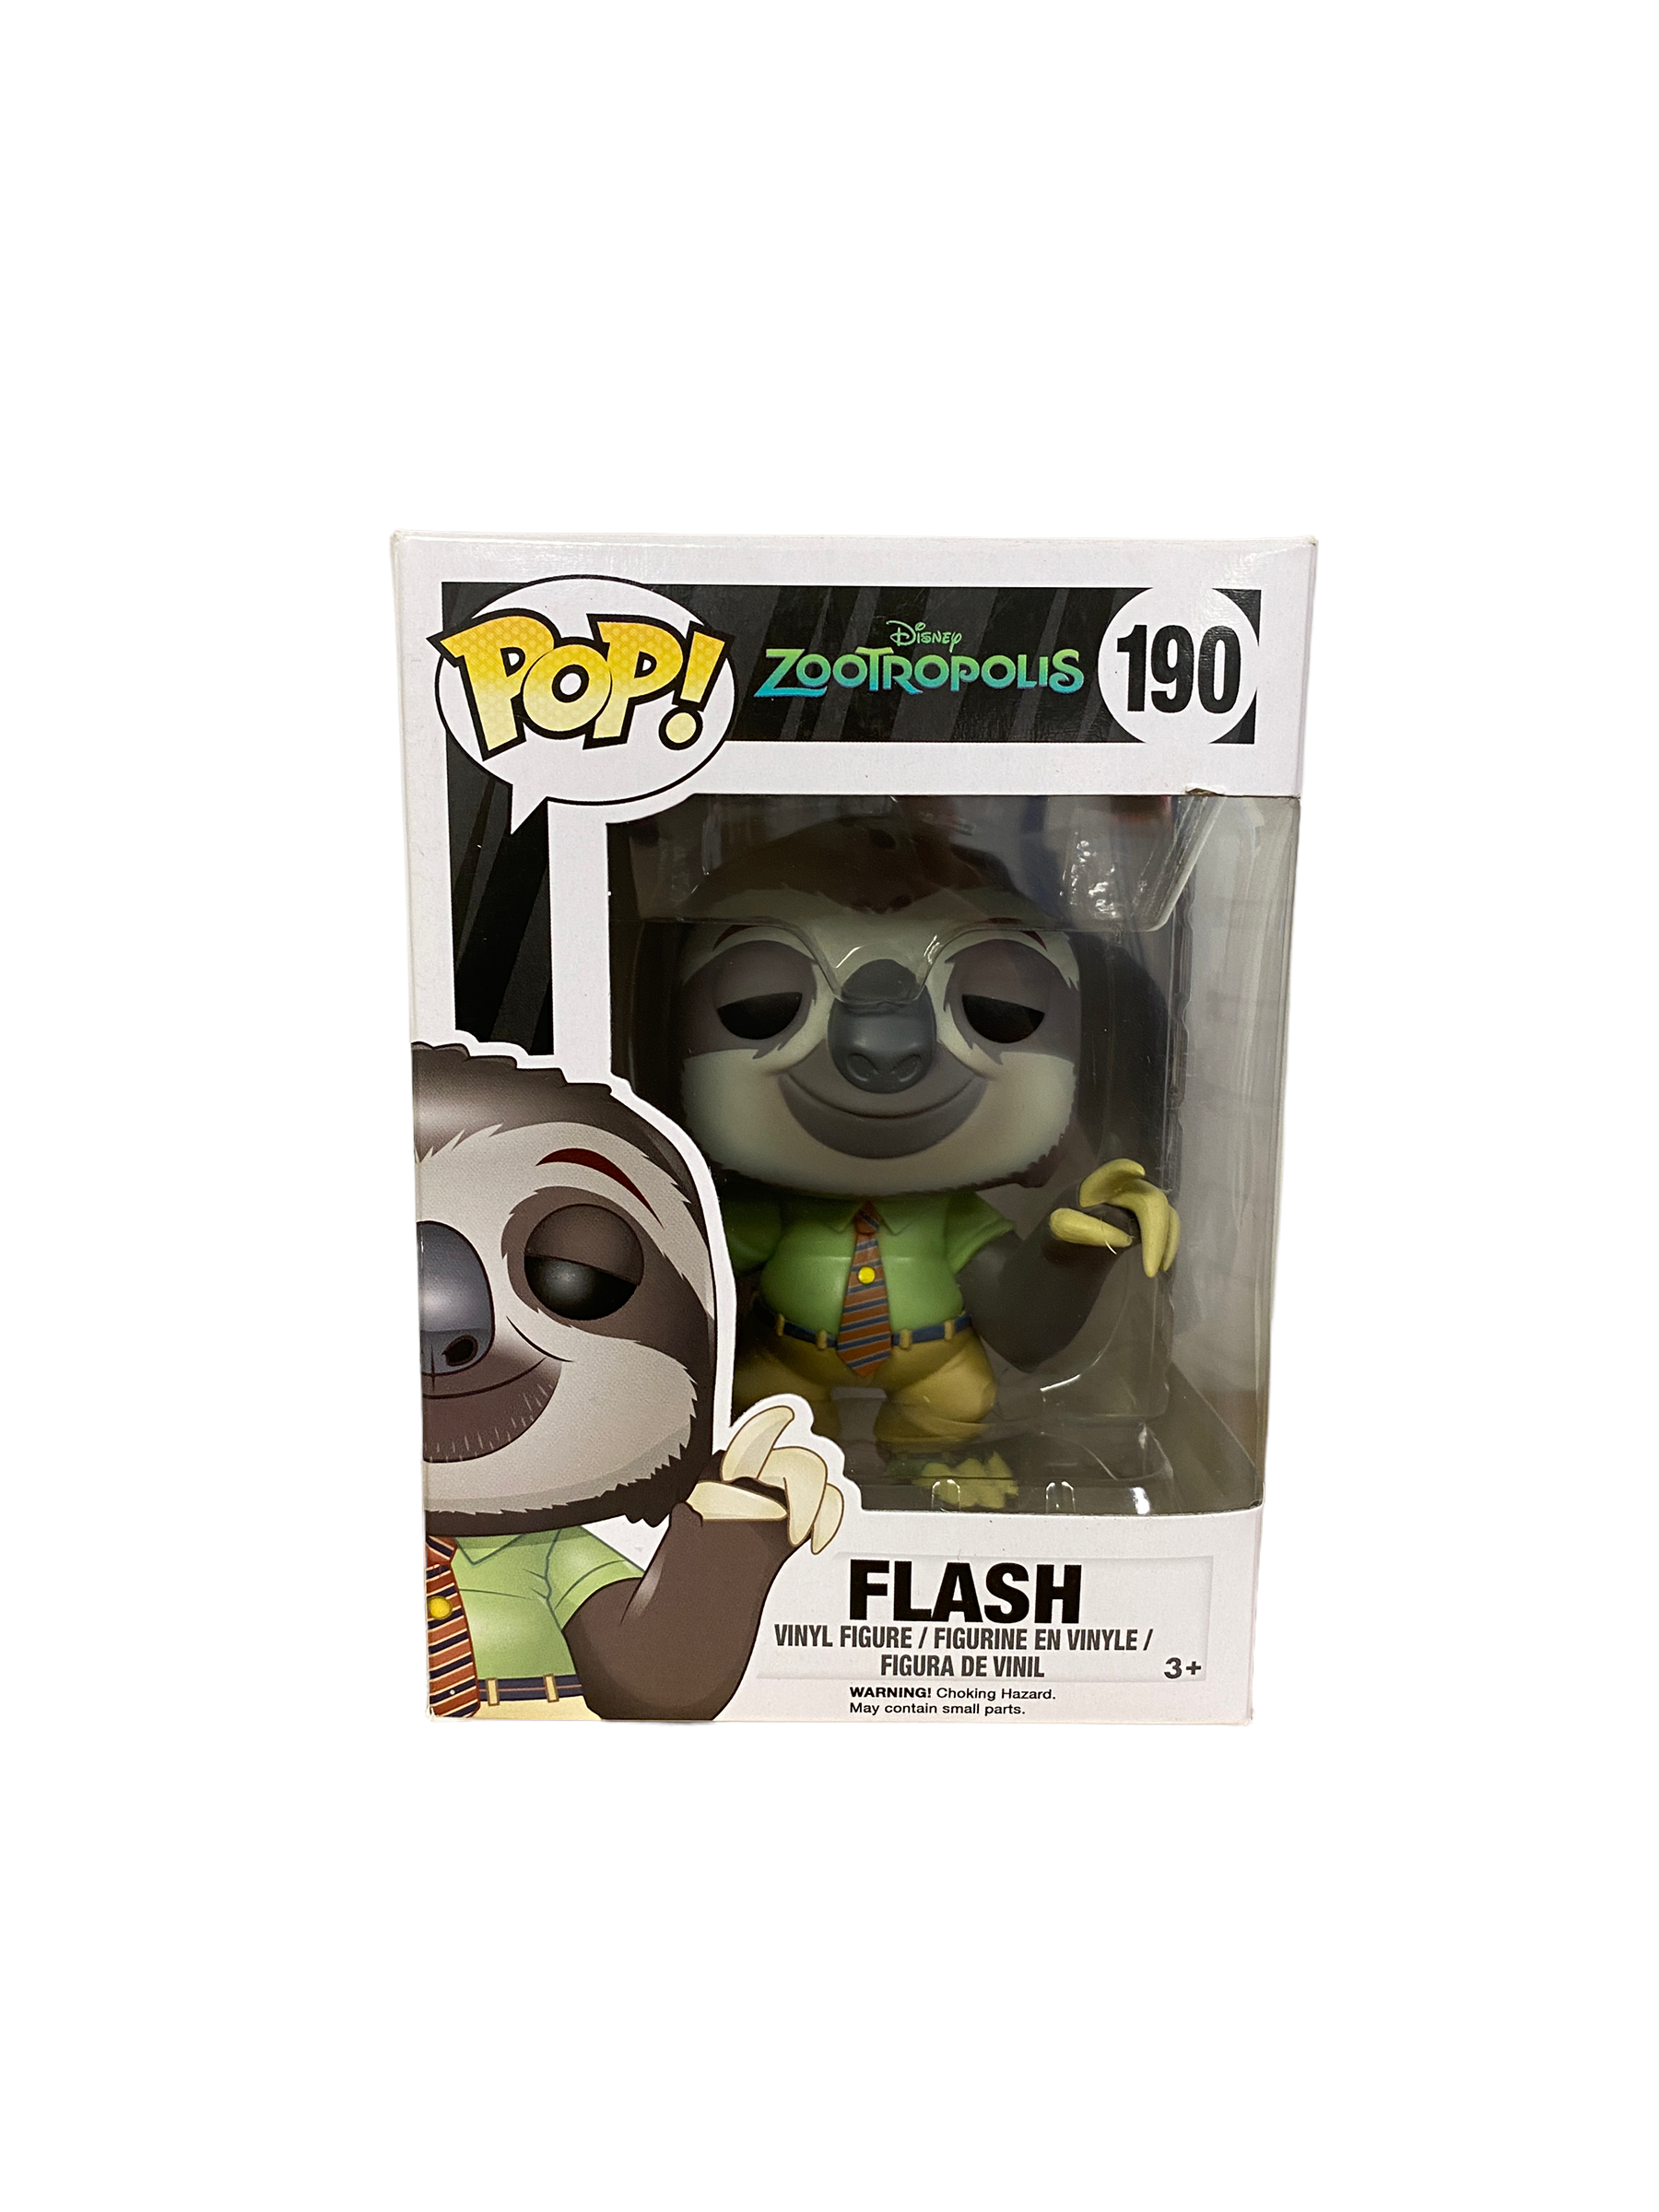 Flash #190 Funko Pop! - Zootropolis - 2016 Pop! - Condition 7.5/10